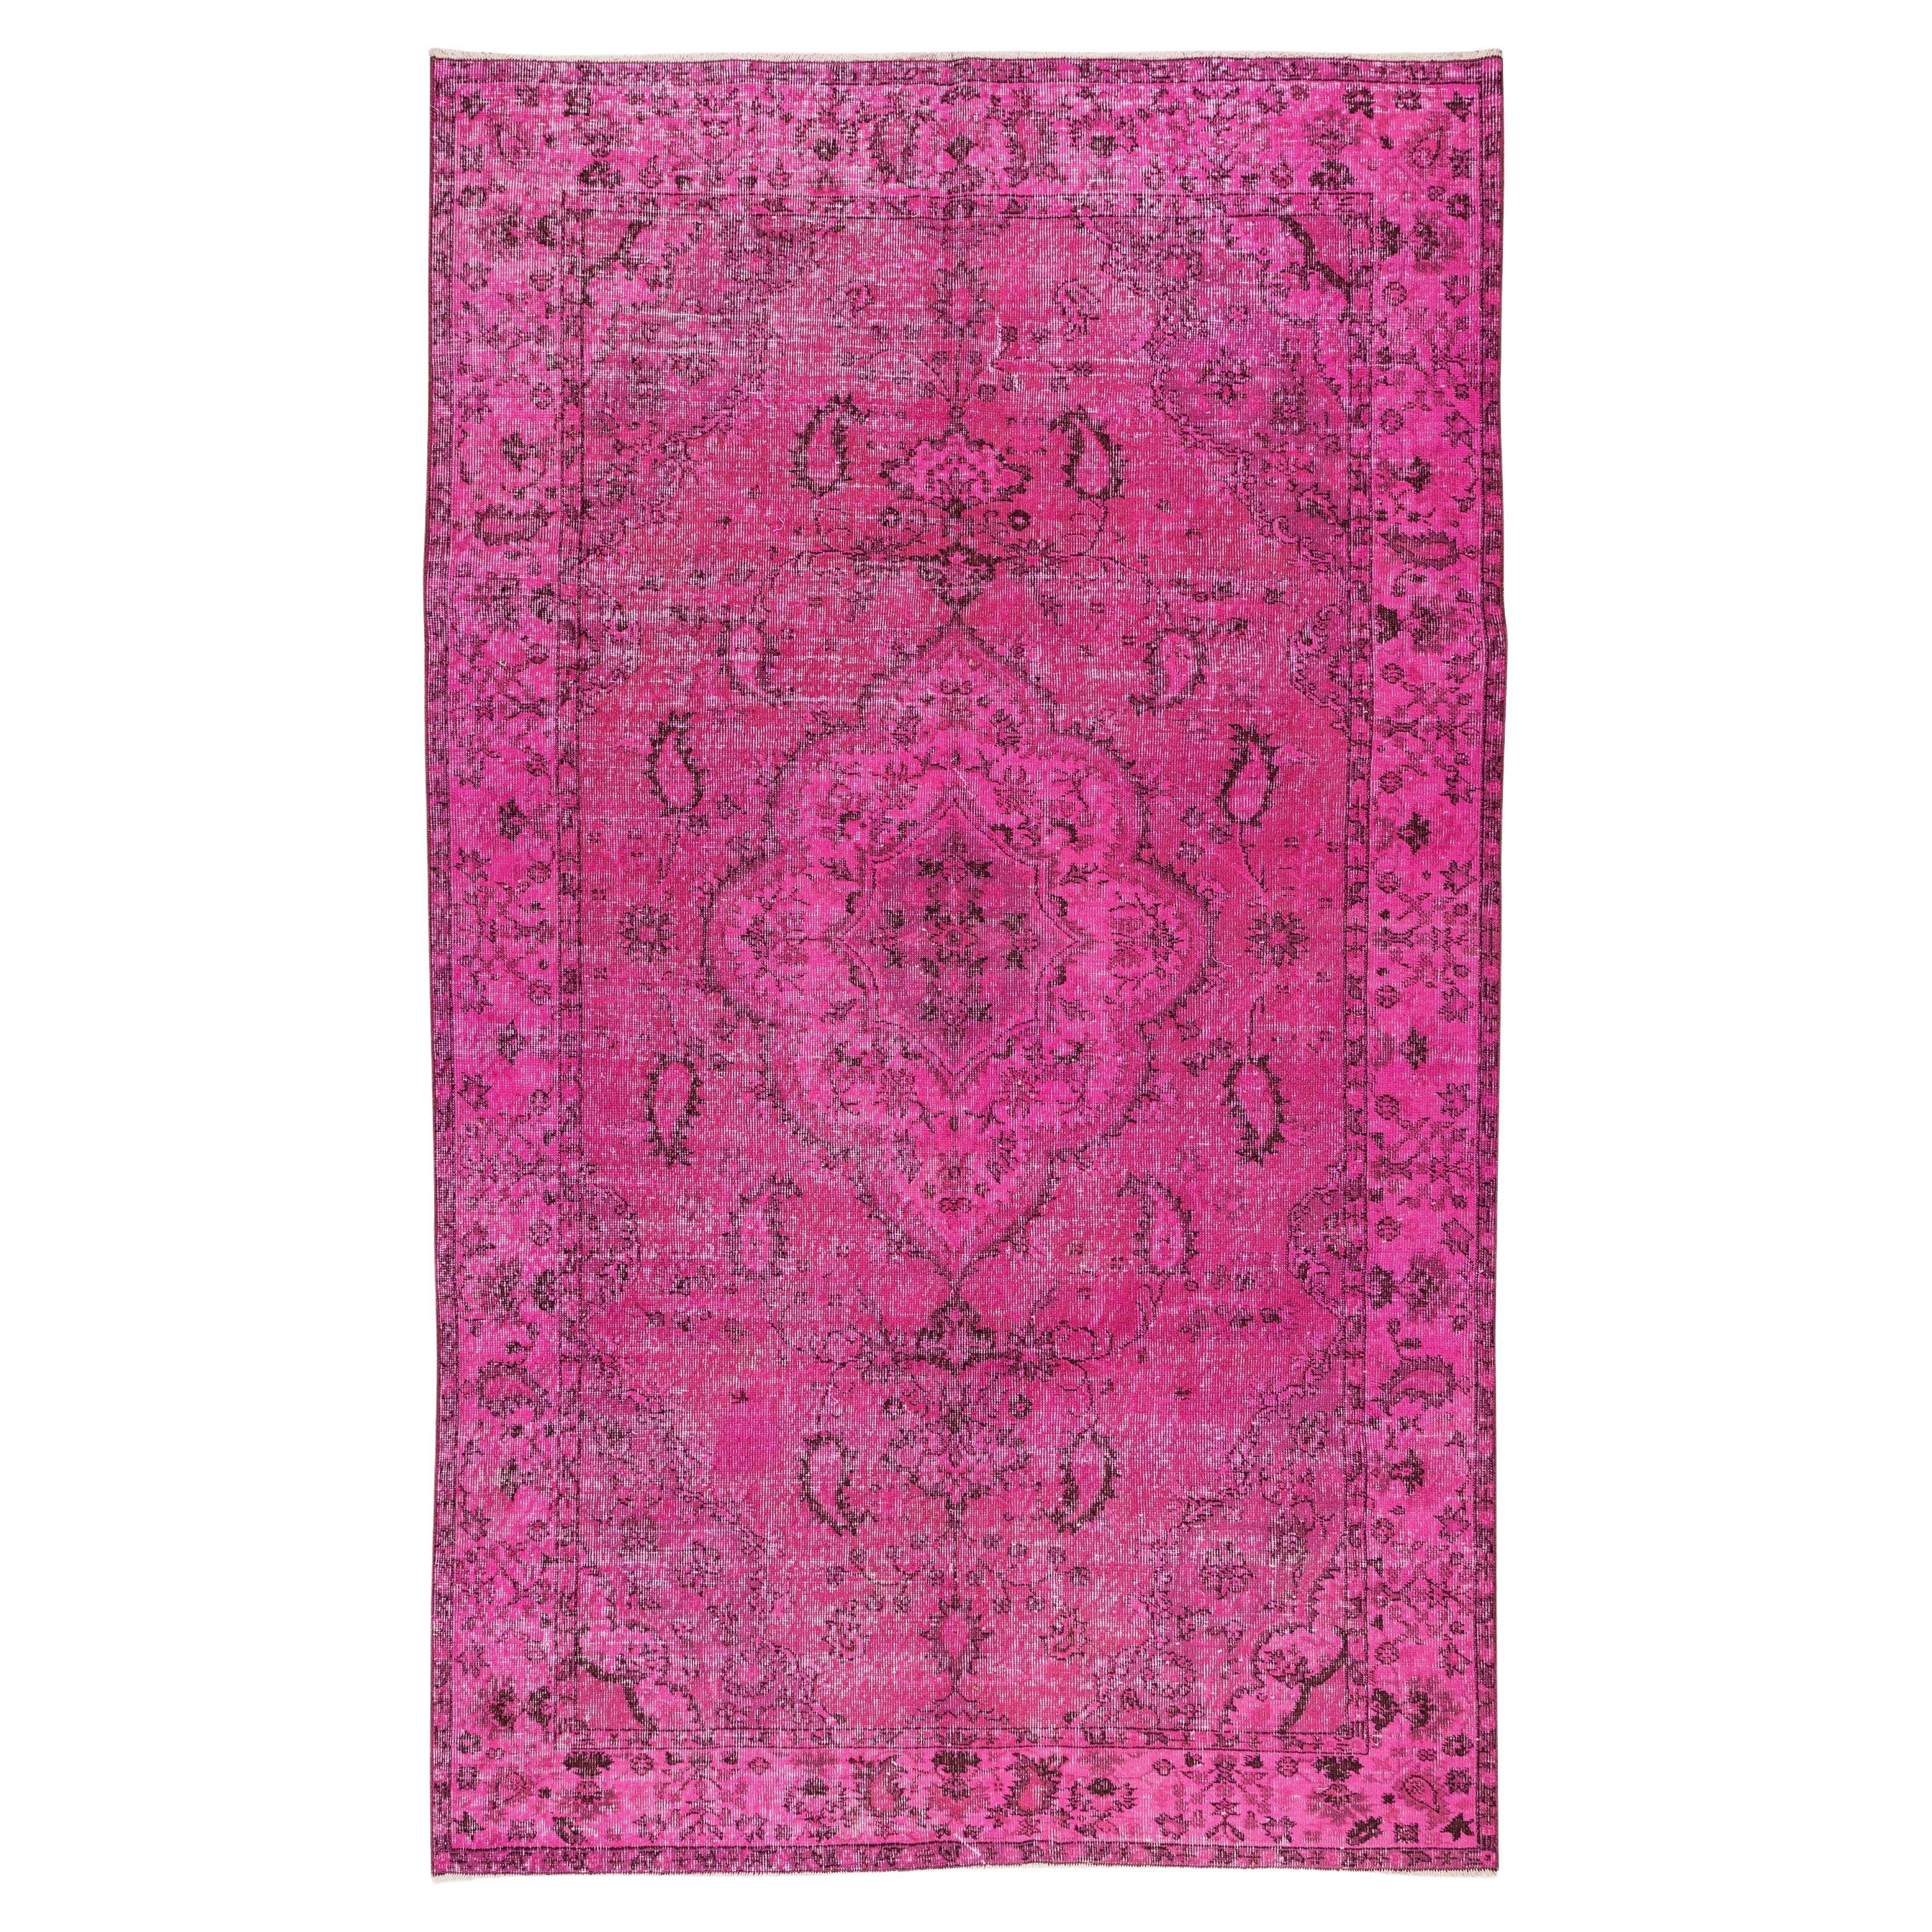 Handgefertigter türkischer Teppich, moderner Teppich für Esszimmer oder Wohnzimmer in Rosa